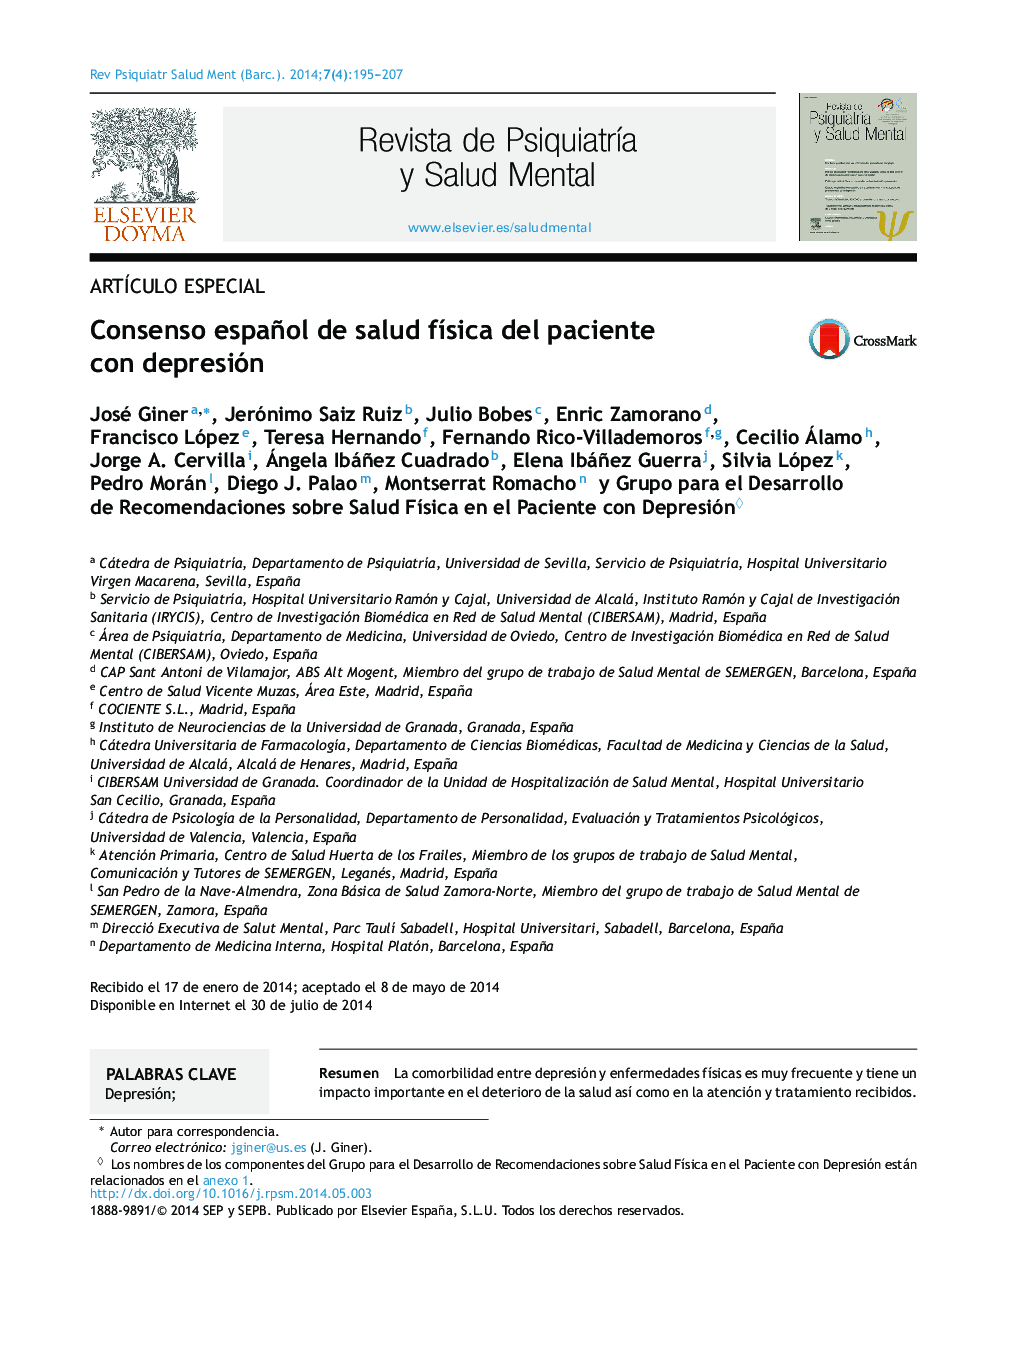 Consenso español de salud fÃ­sica del paciente con depresión